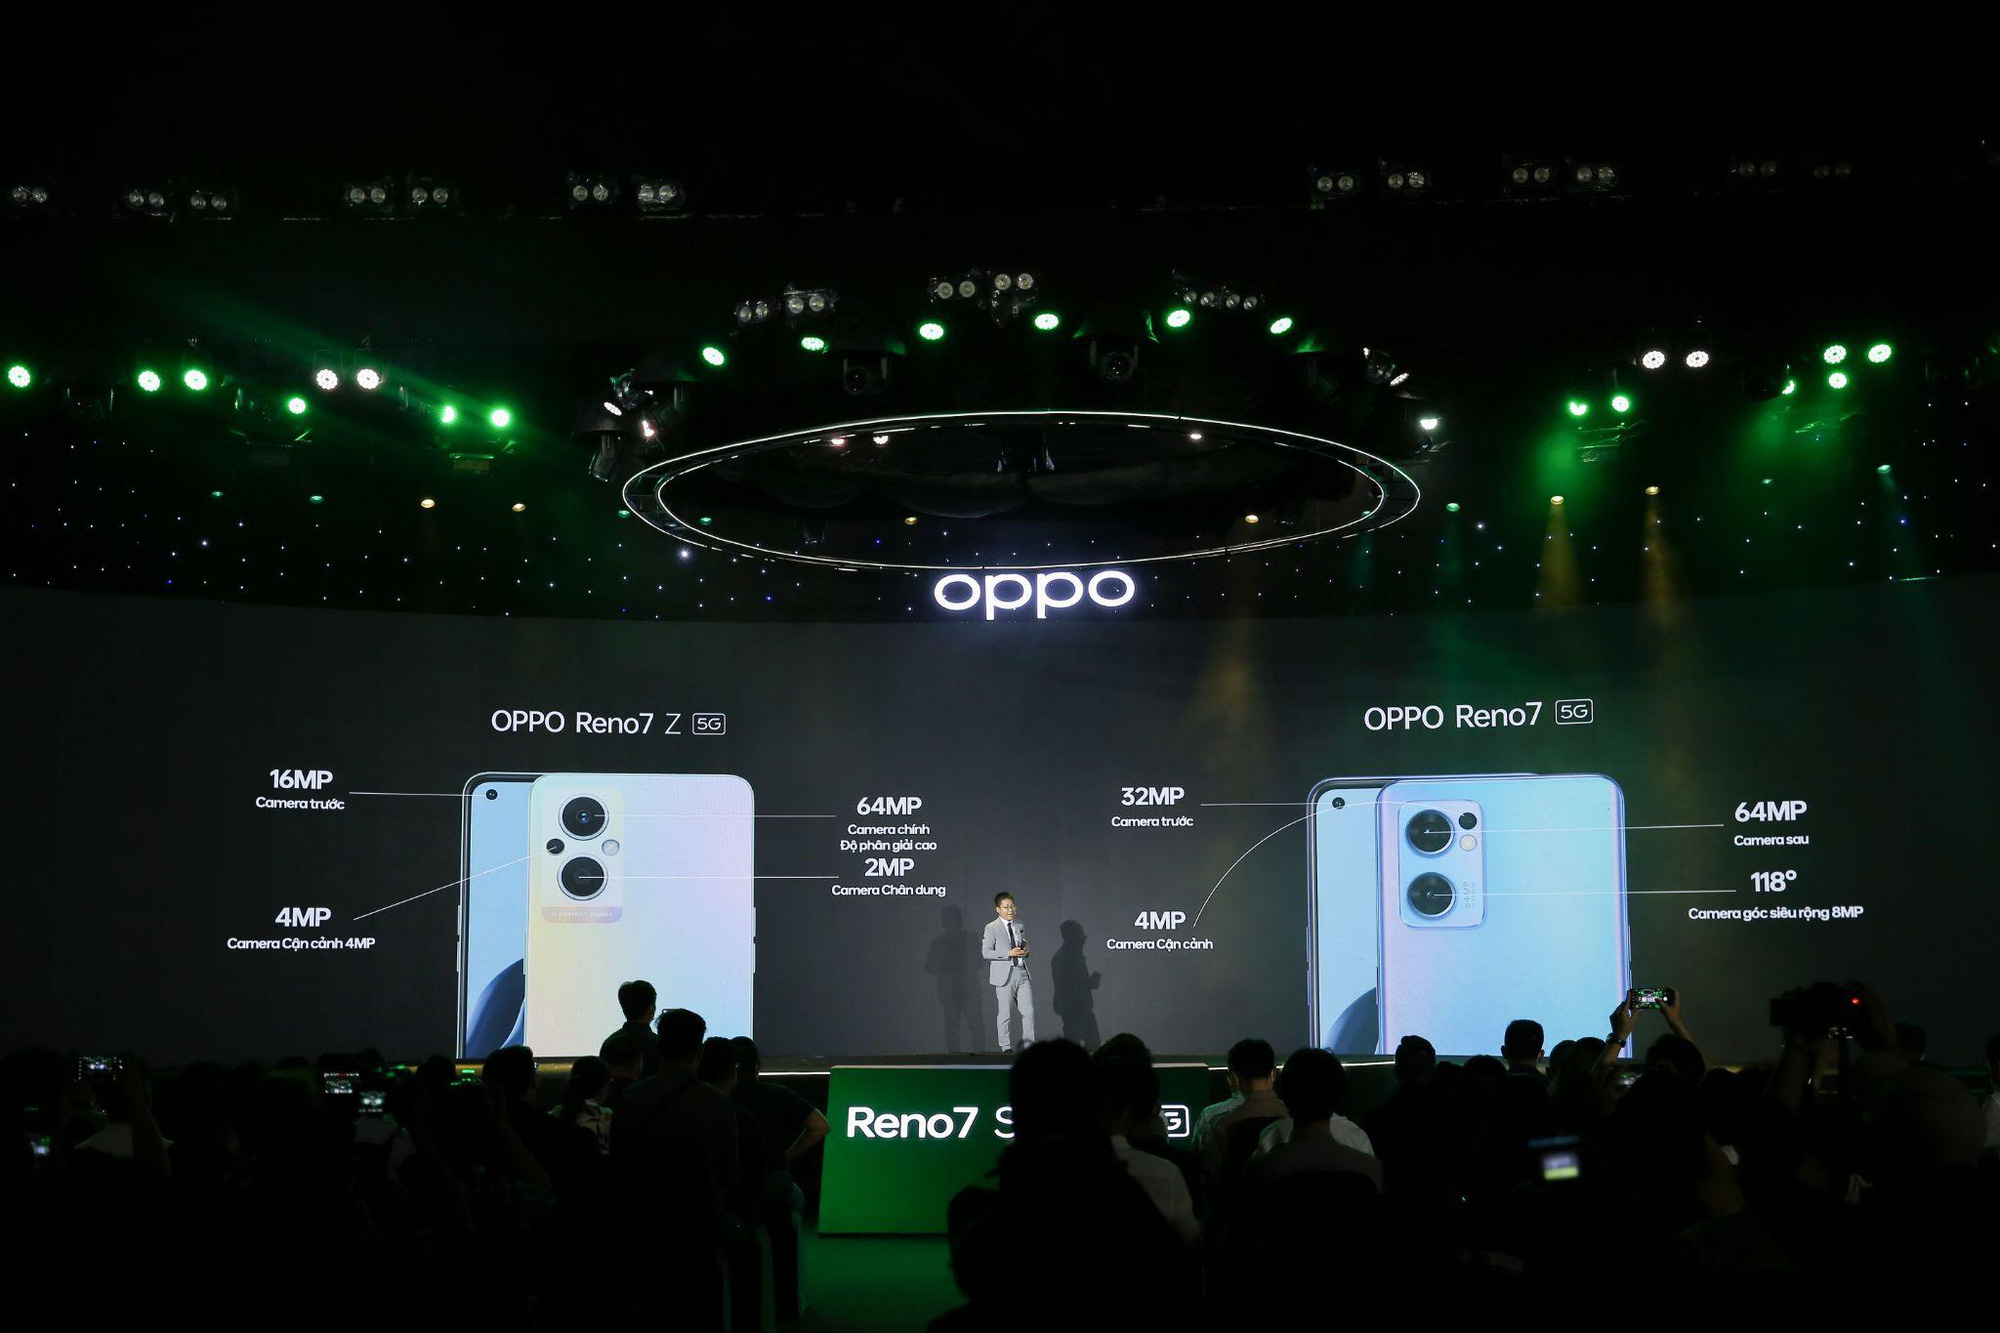 Sự thật về “7 phiên bản đa sắc” của OPPO Reno7 Series 5G khiến giới công nghệ xôn xao - Ảnh 1.